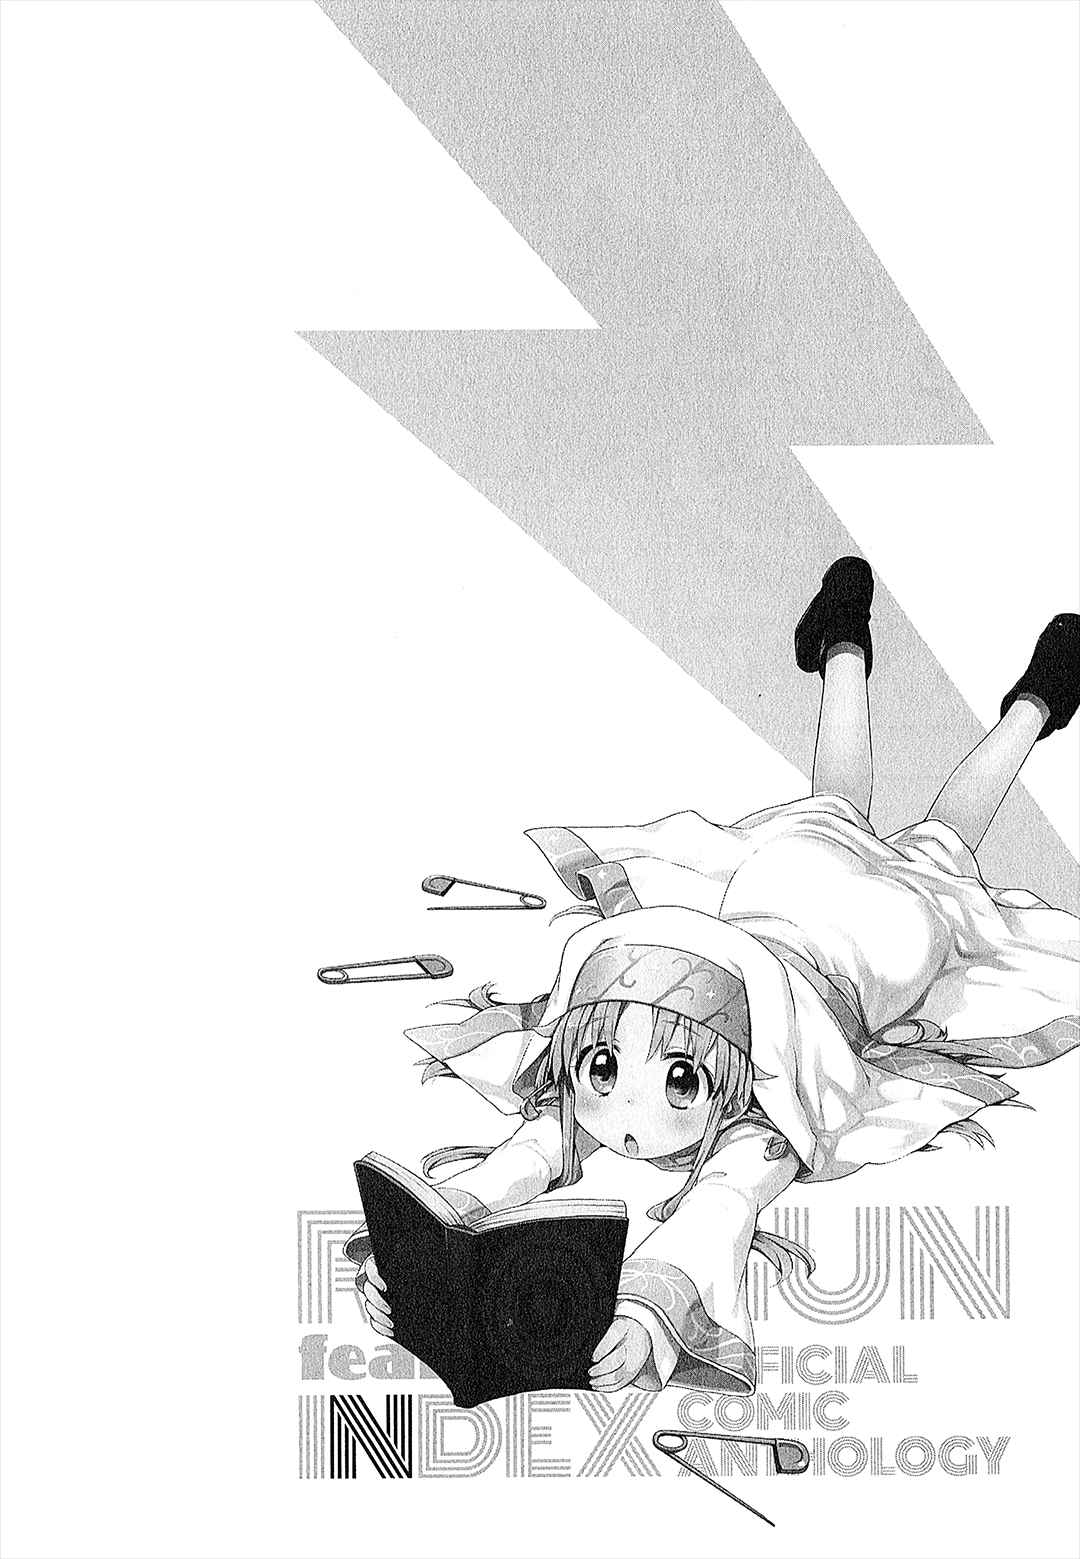 Koushiki Comic Anthology Toaru Kagaku no Railgun featuring Toaru Majutsu no Index Vol. 1 Ch. 4 Nun Maid Custard